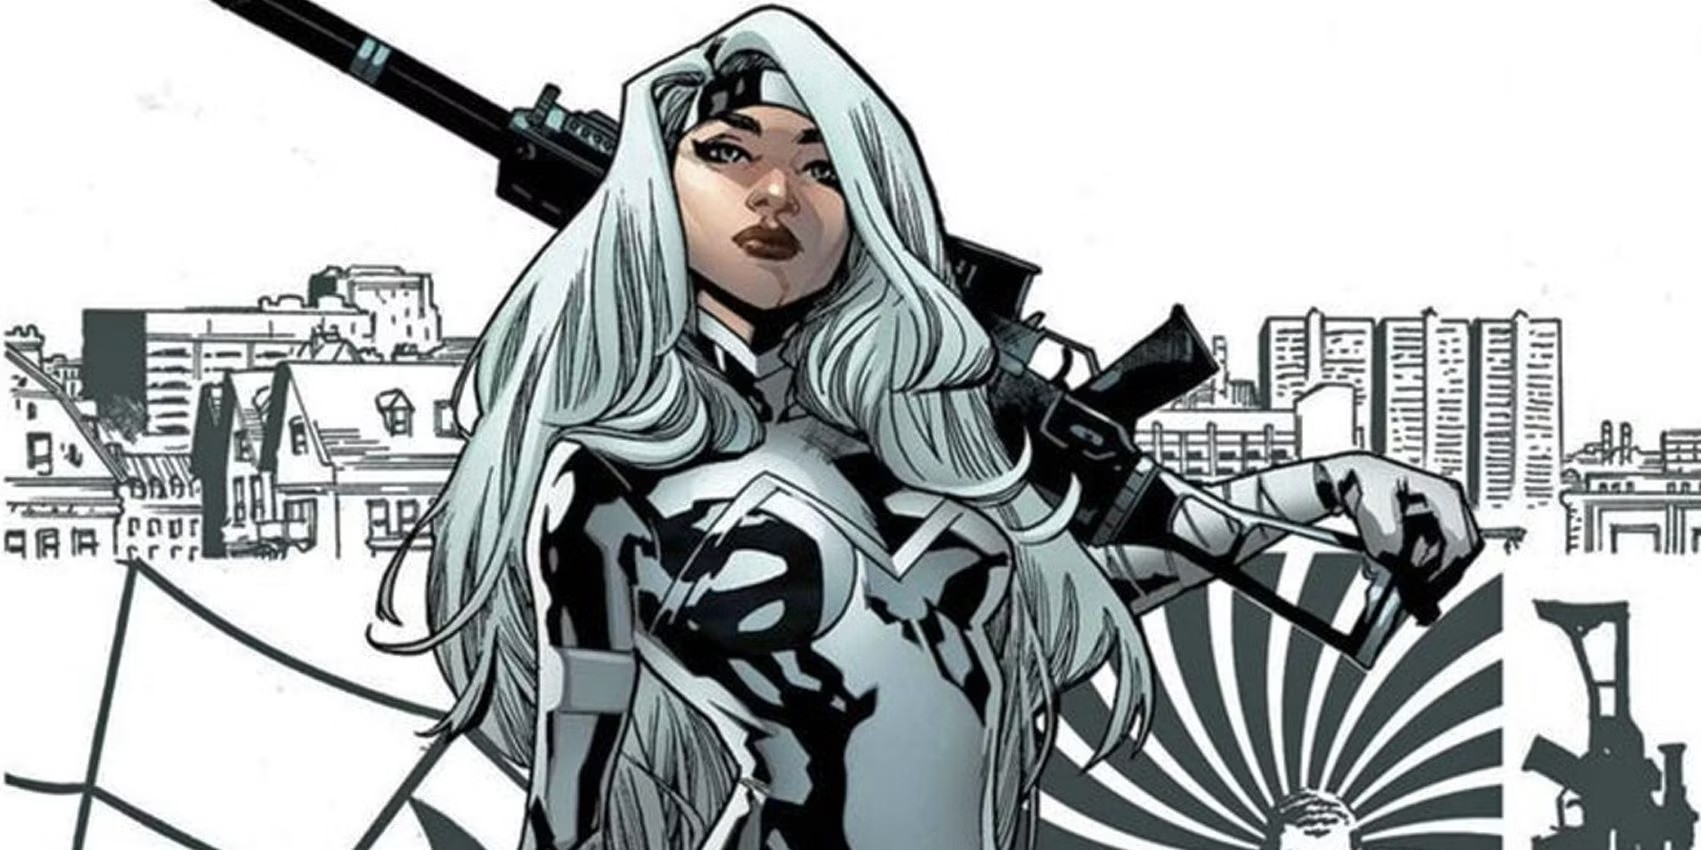 Silver Sable segura uma arma em uma história em quadrinhos da Marvel.